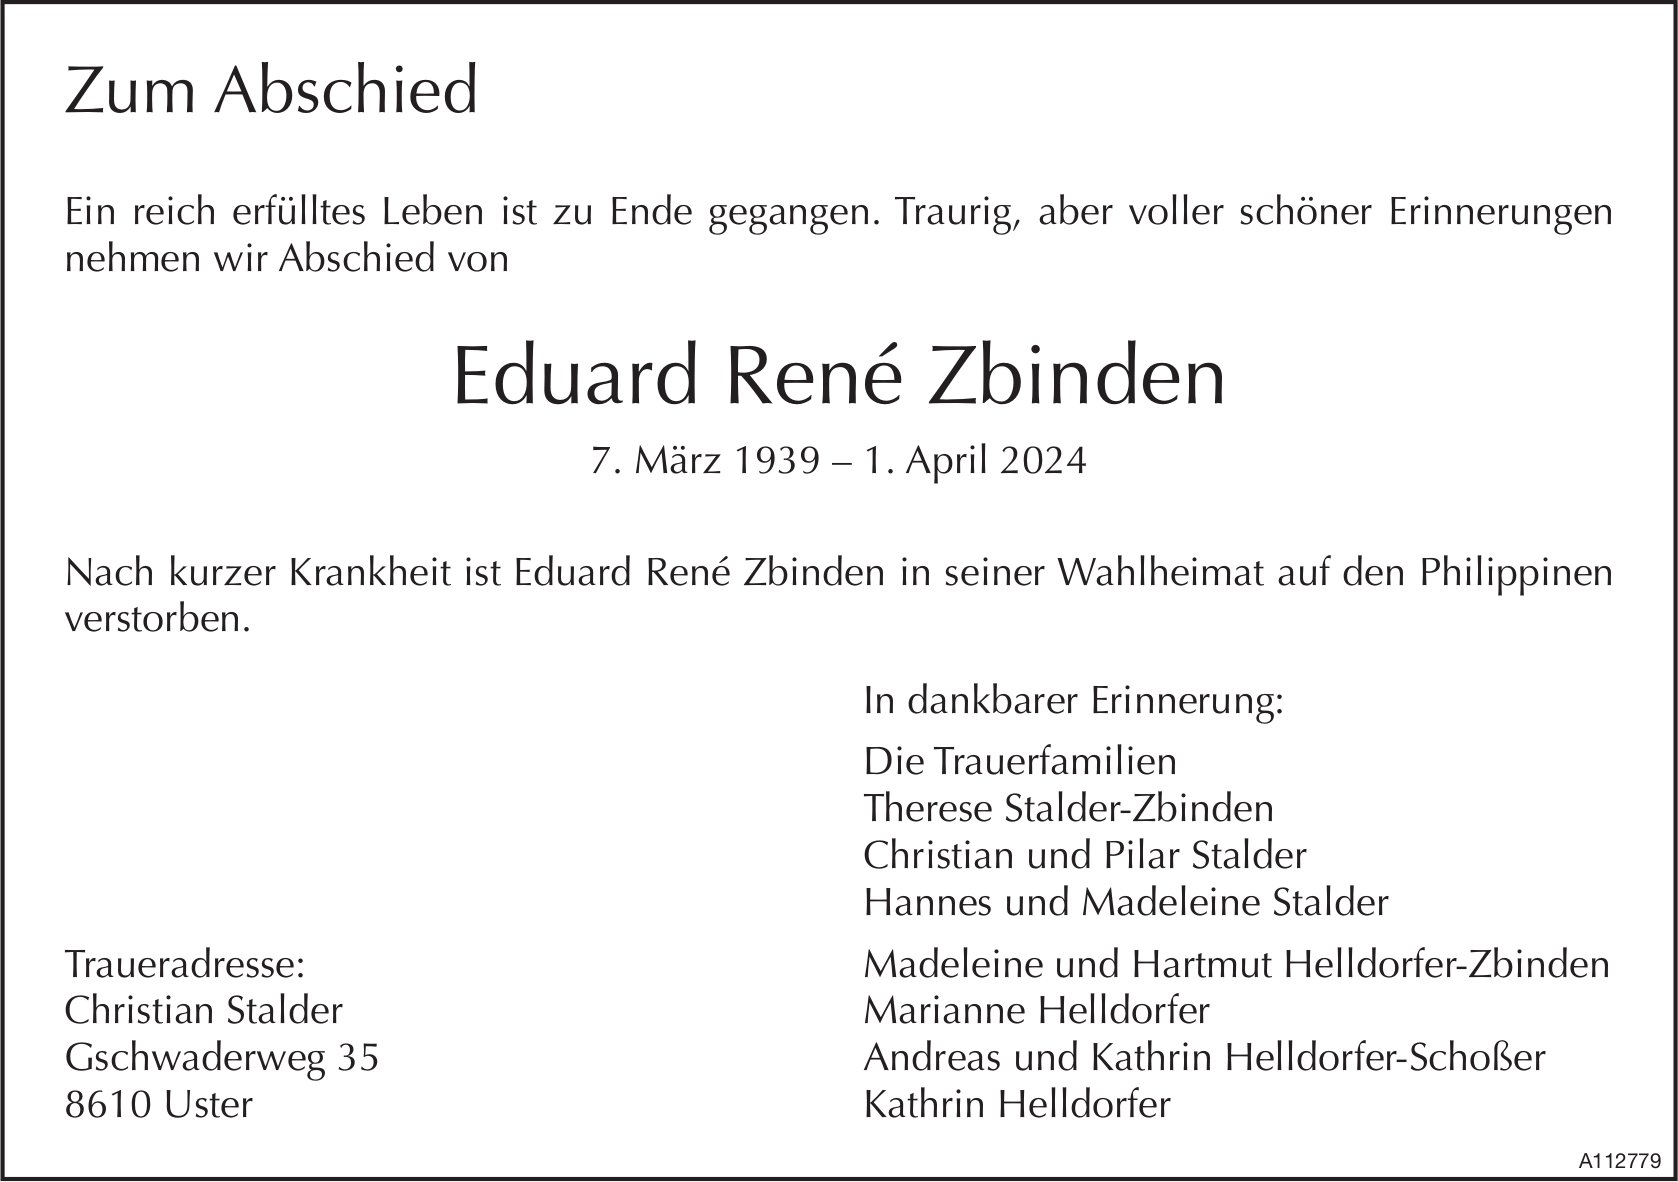 Eduard René Zbinden, April 2024 / TA